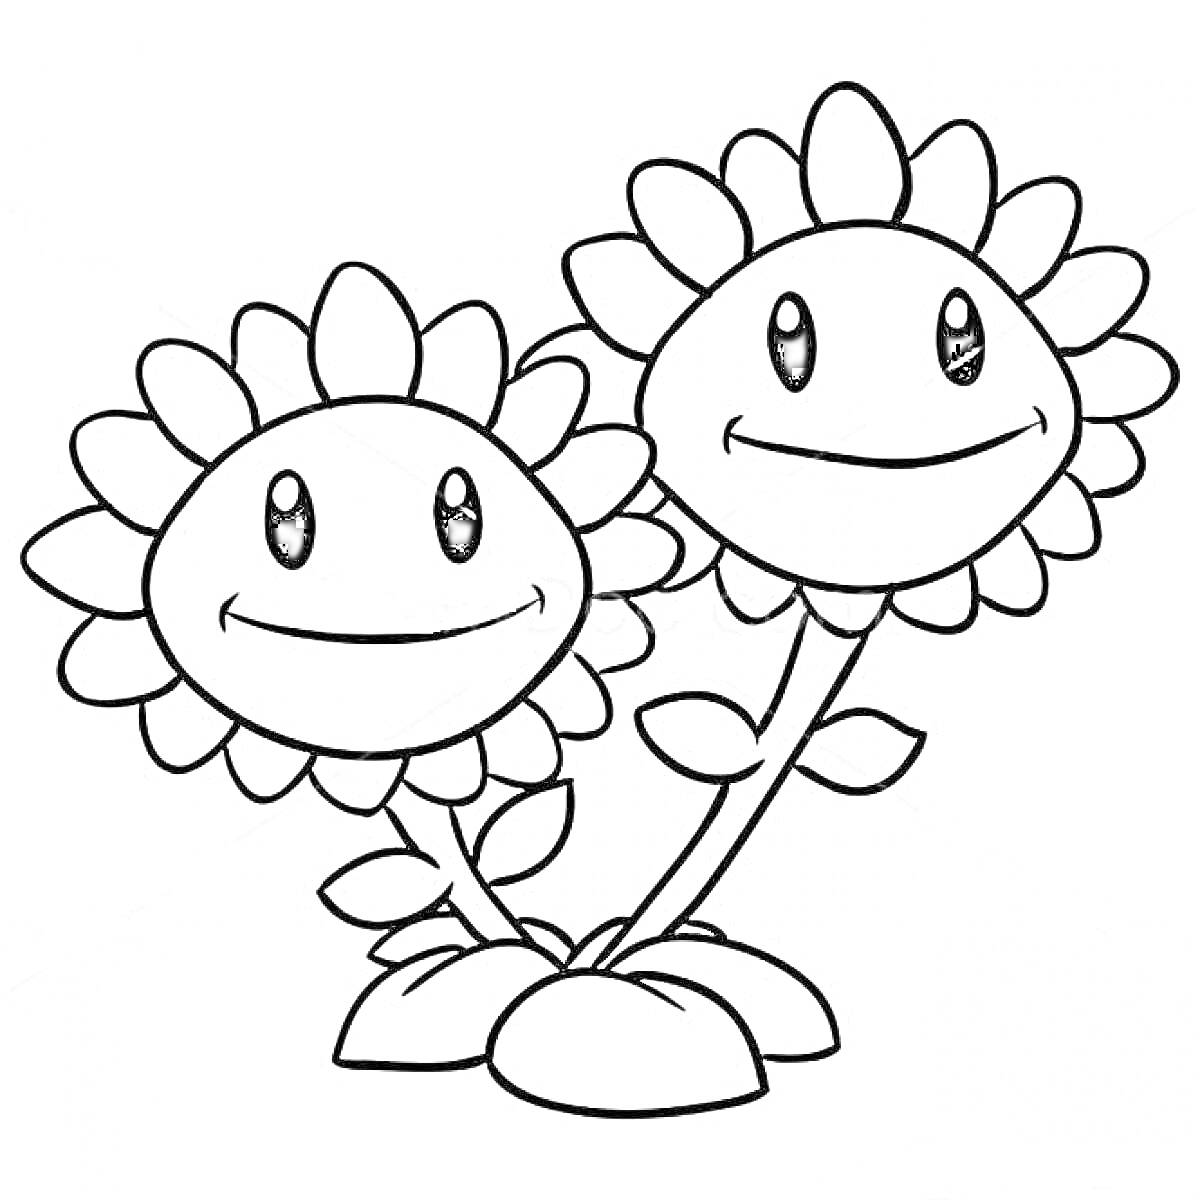 Раскраска Две улыбающиеся подсолнечные цветы с листьями и корнями